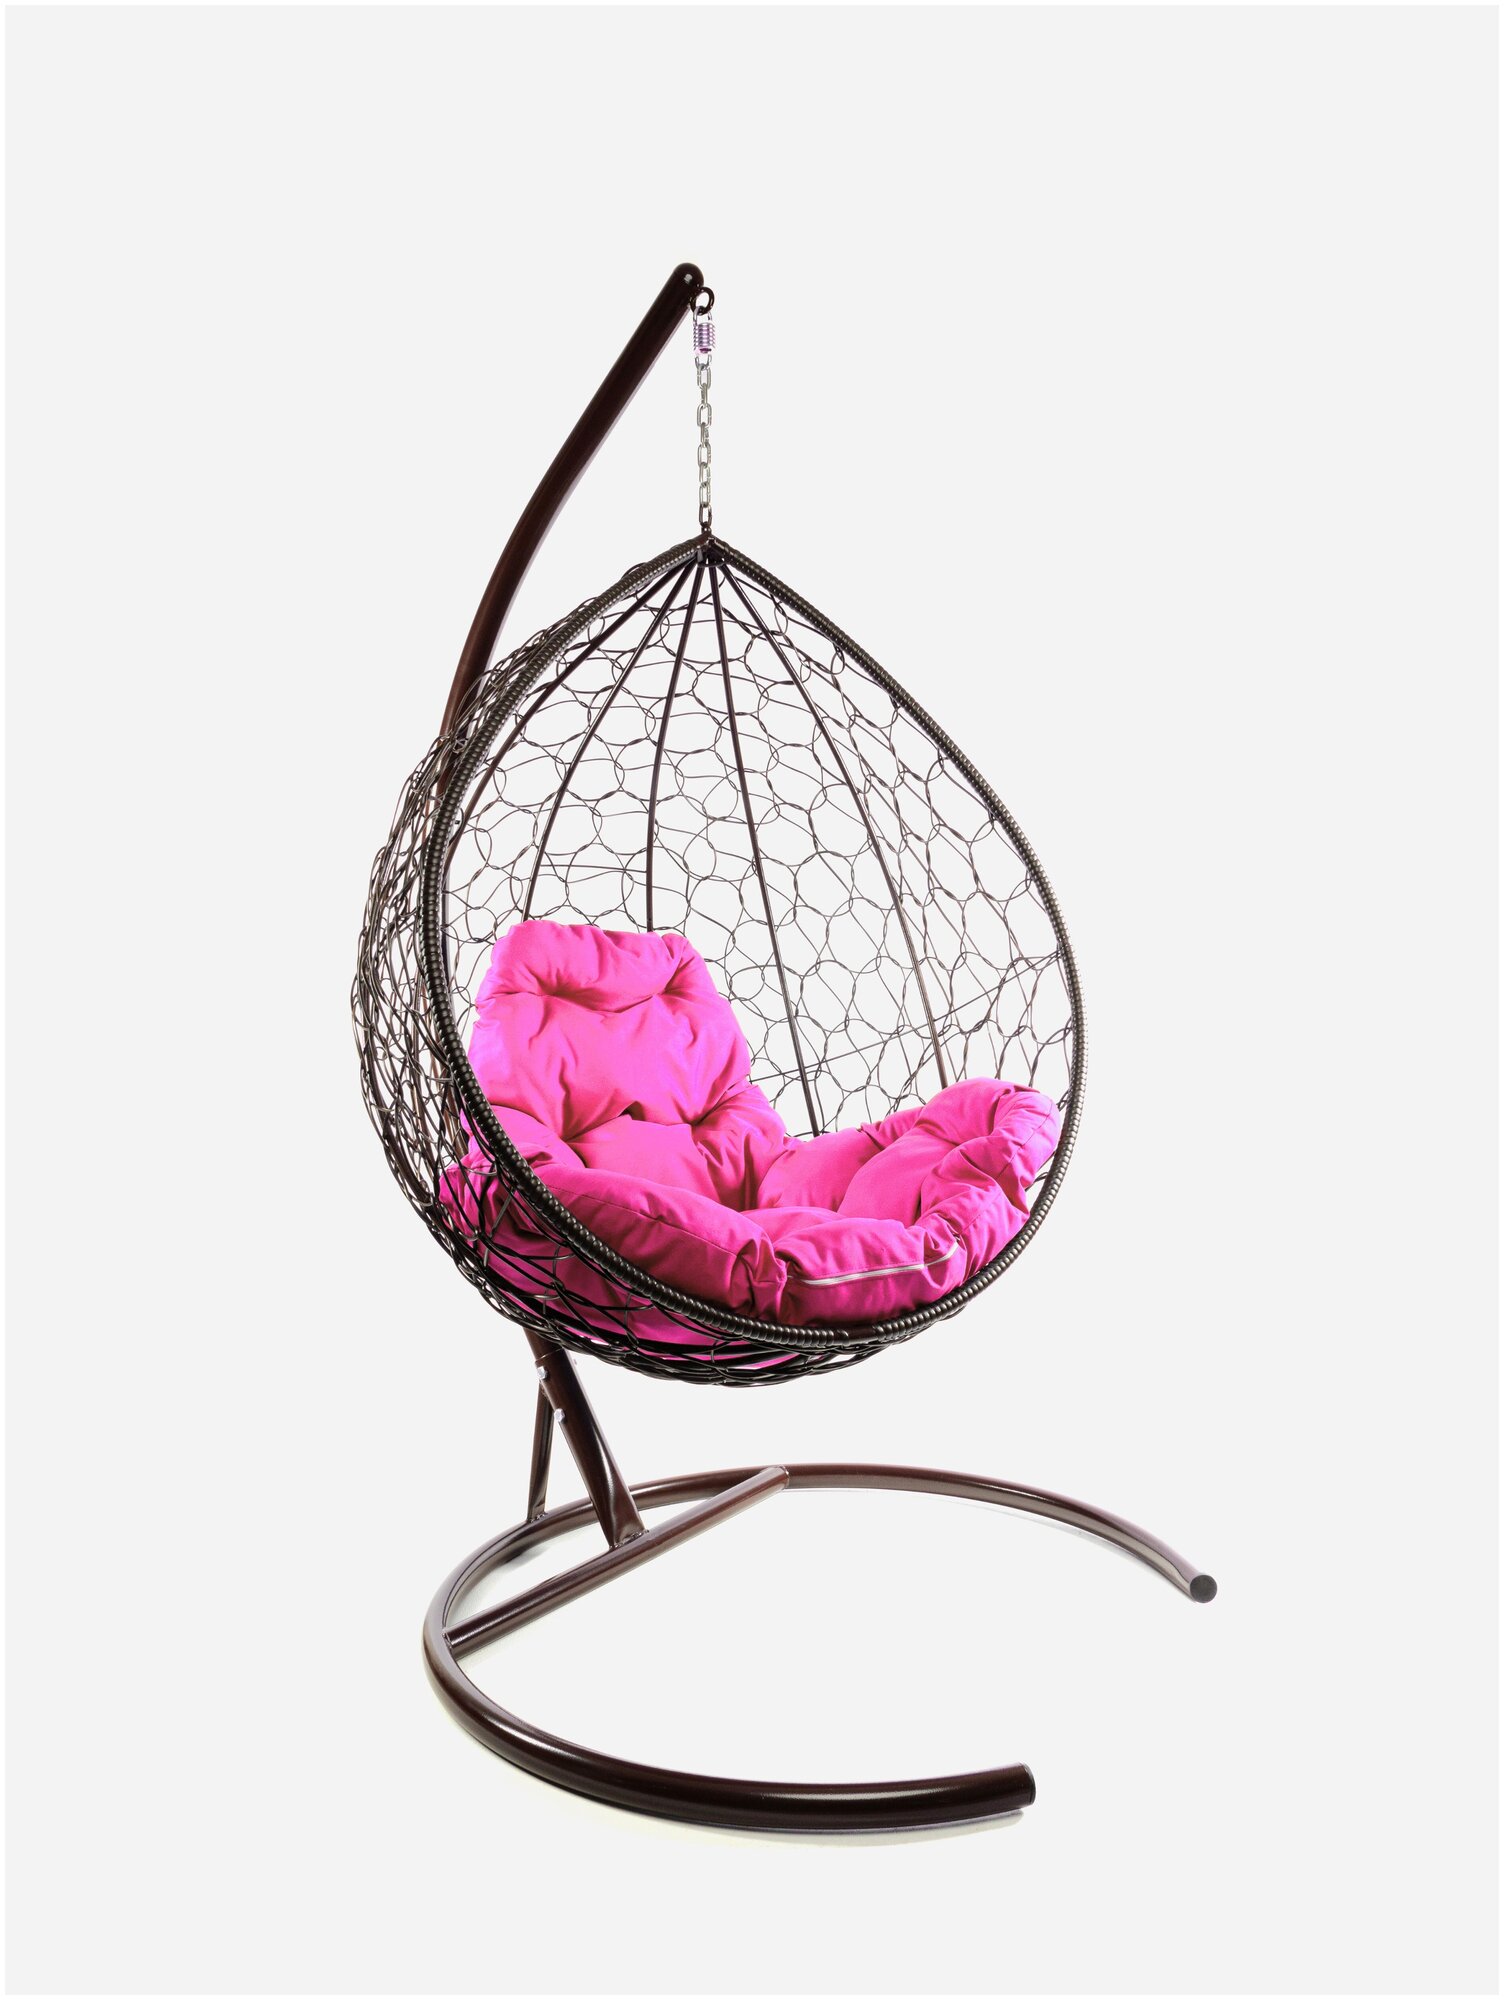 Подвесное кресло m-group капля ротанг коричневое, розовая подушка - фотография № 1